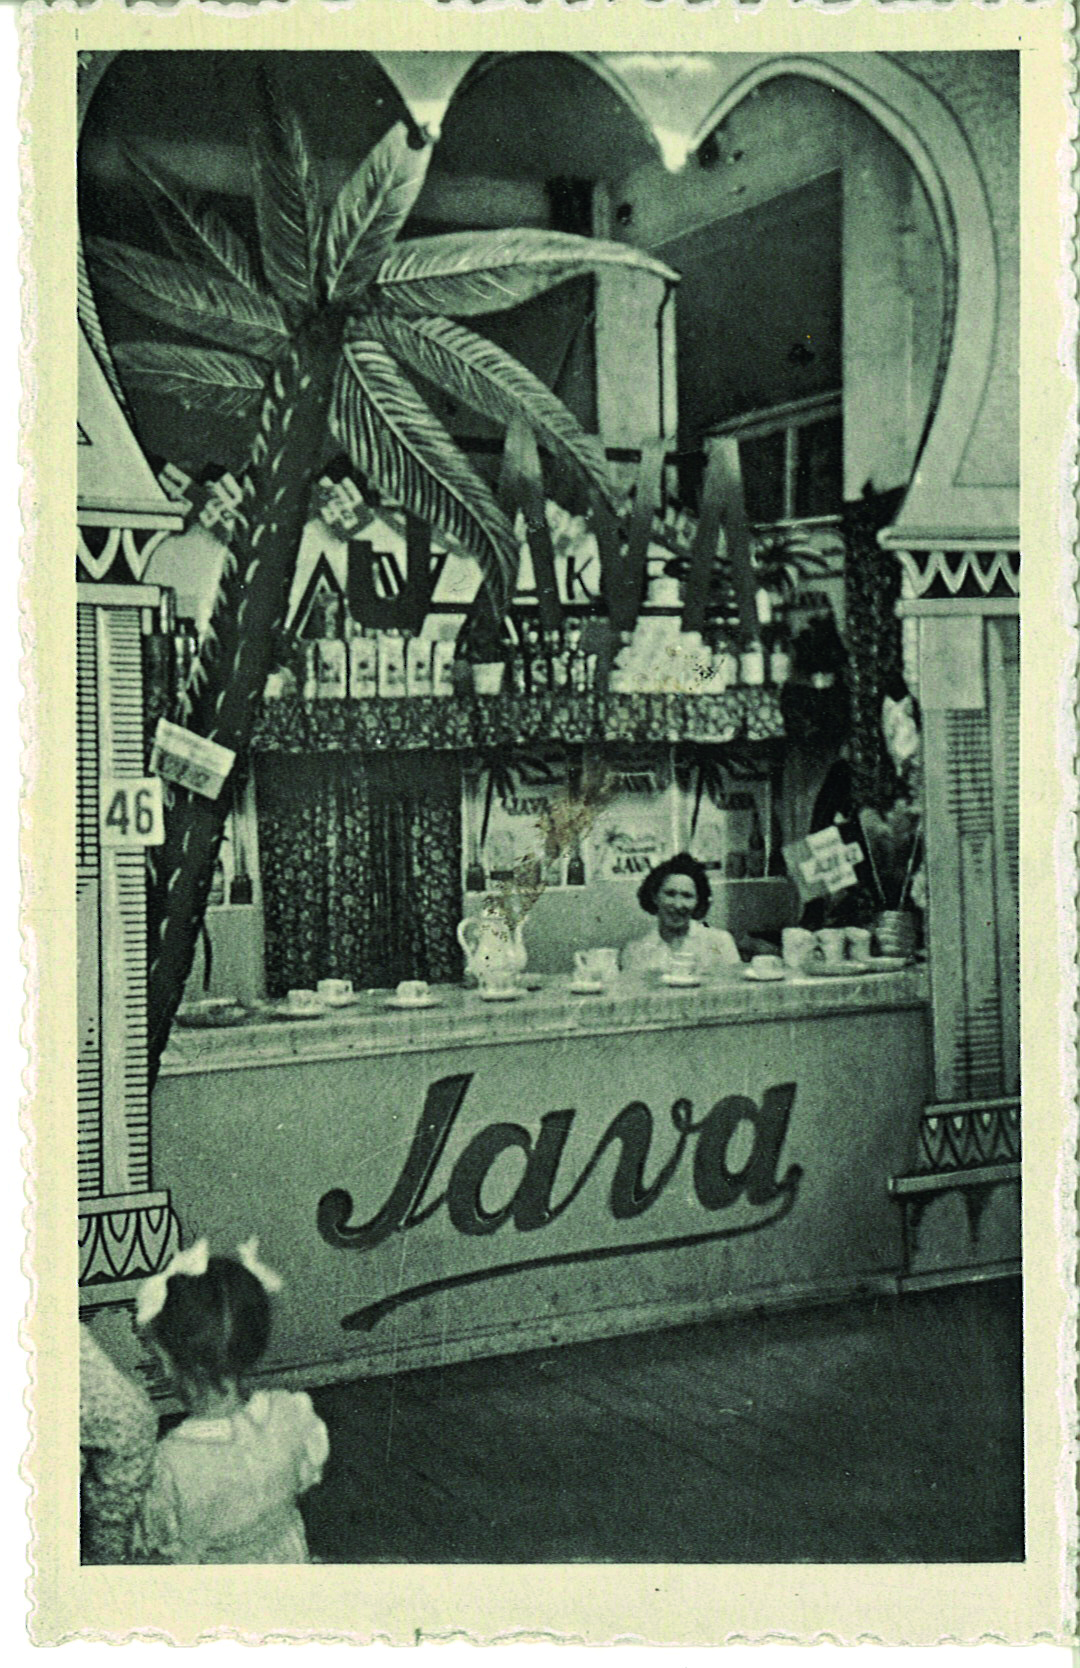 Verkoopstand van koffiebranderij Java in de jaren 1930-1940. Collectie koffiebranderij The Java Coffee Roasters, Rotselaar.